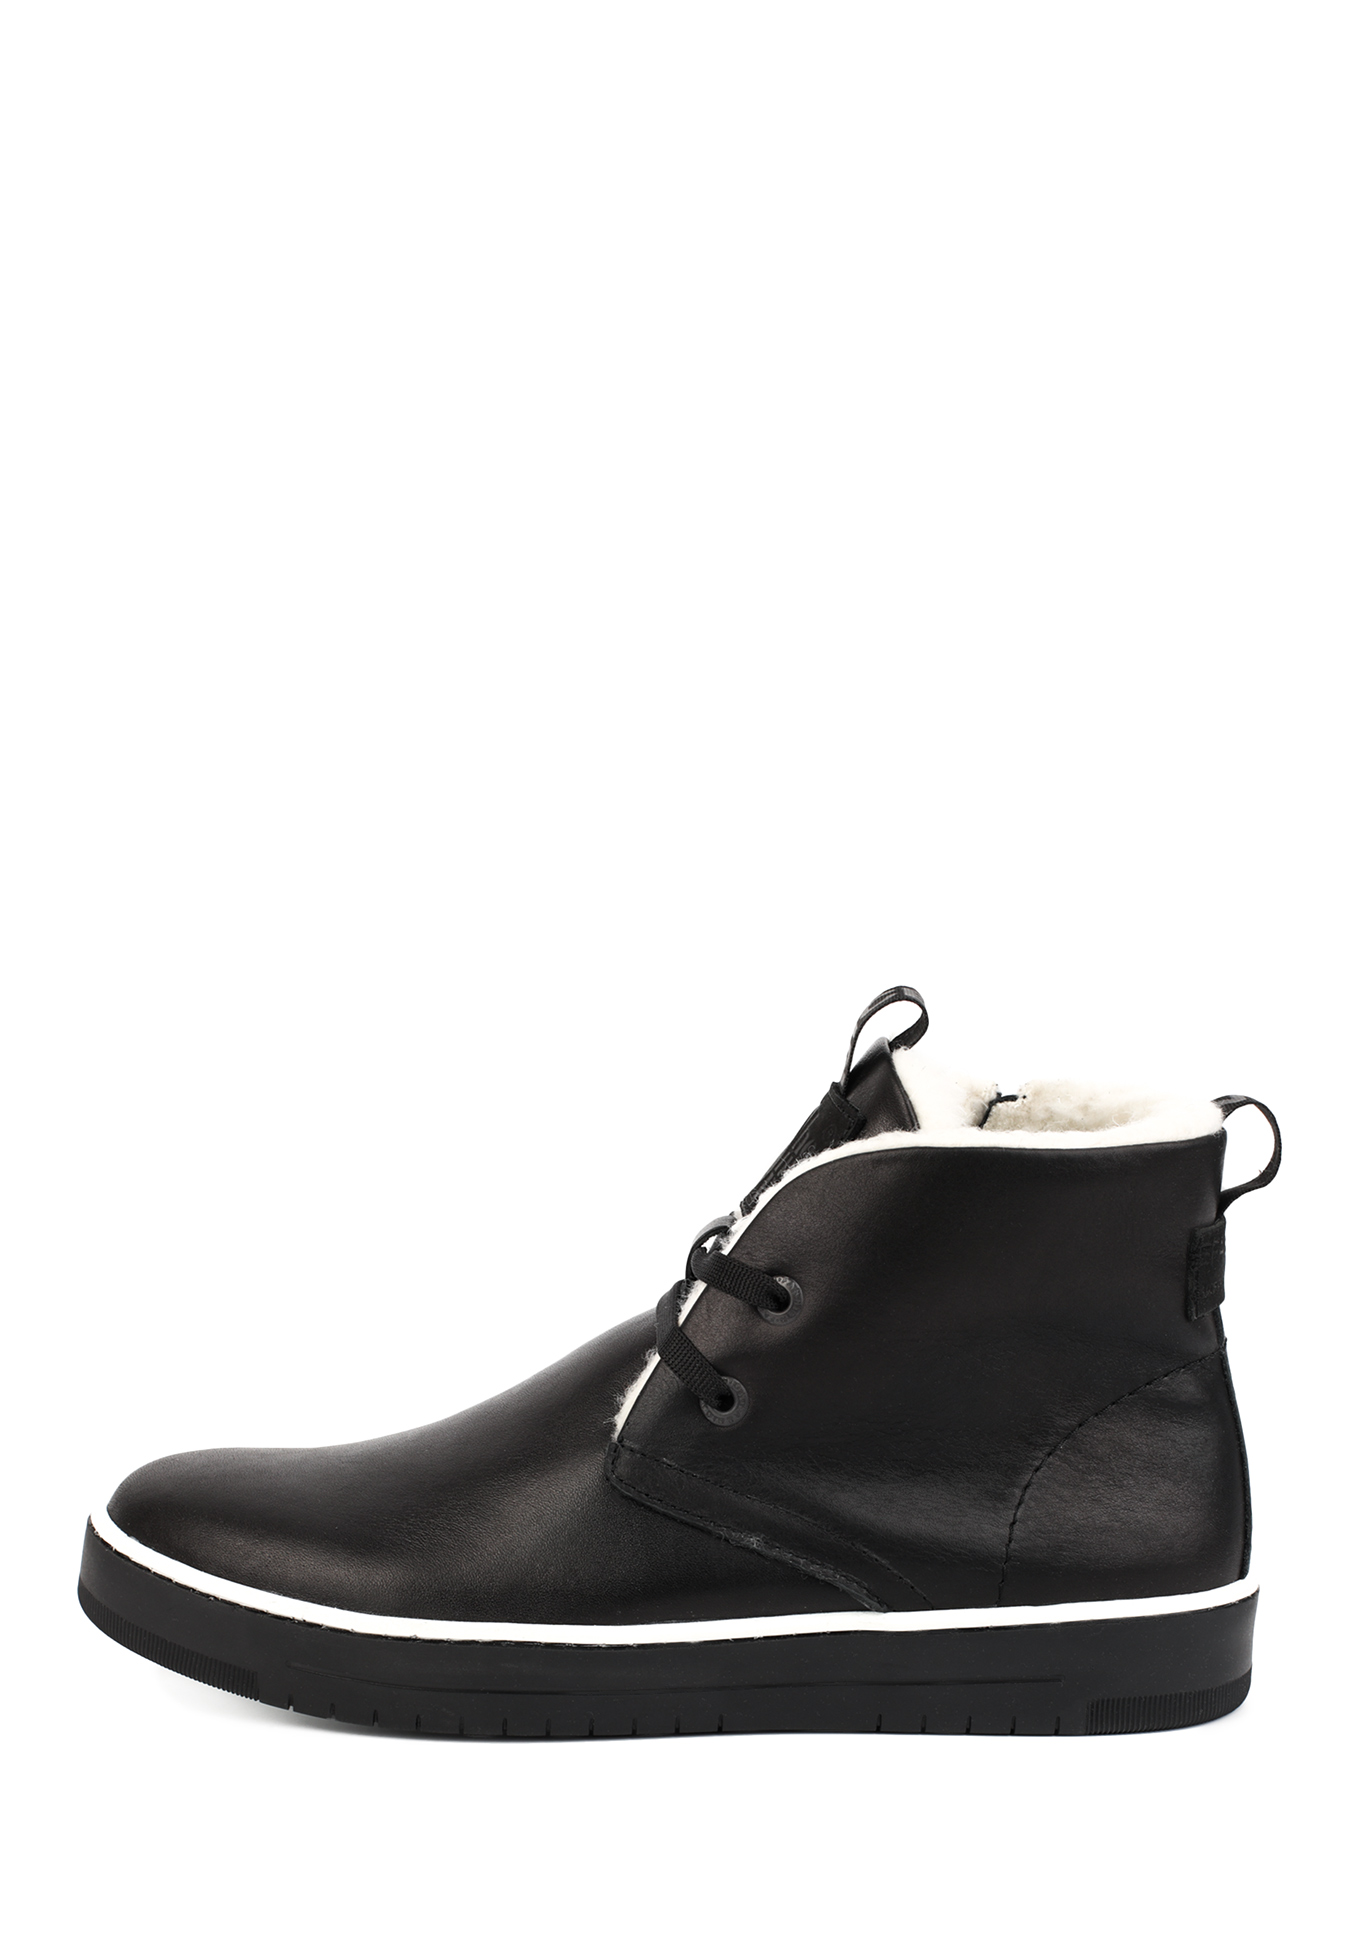 Ботинки мужские  "Стеффан" Shoiberg, размер 40, цвет черный - фото 2